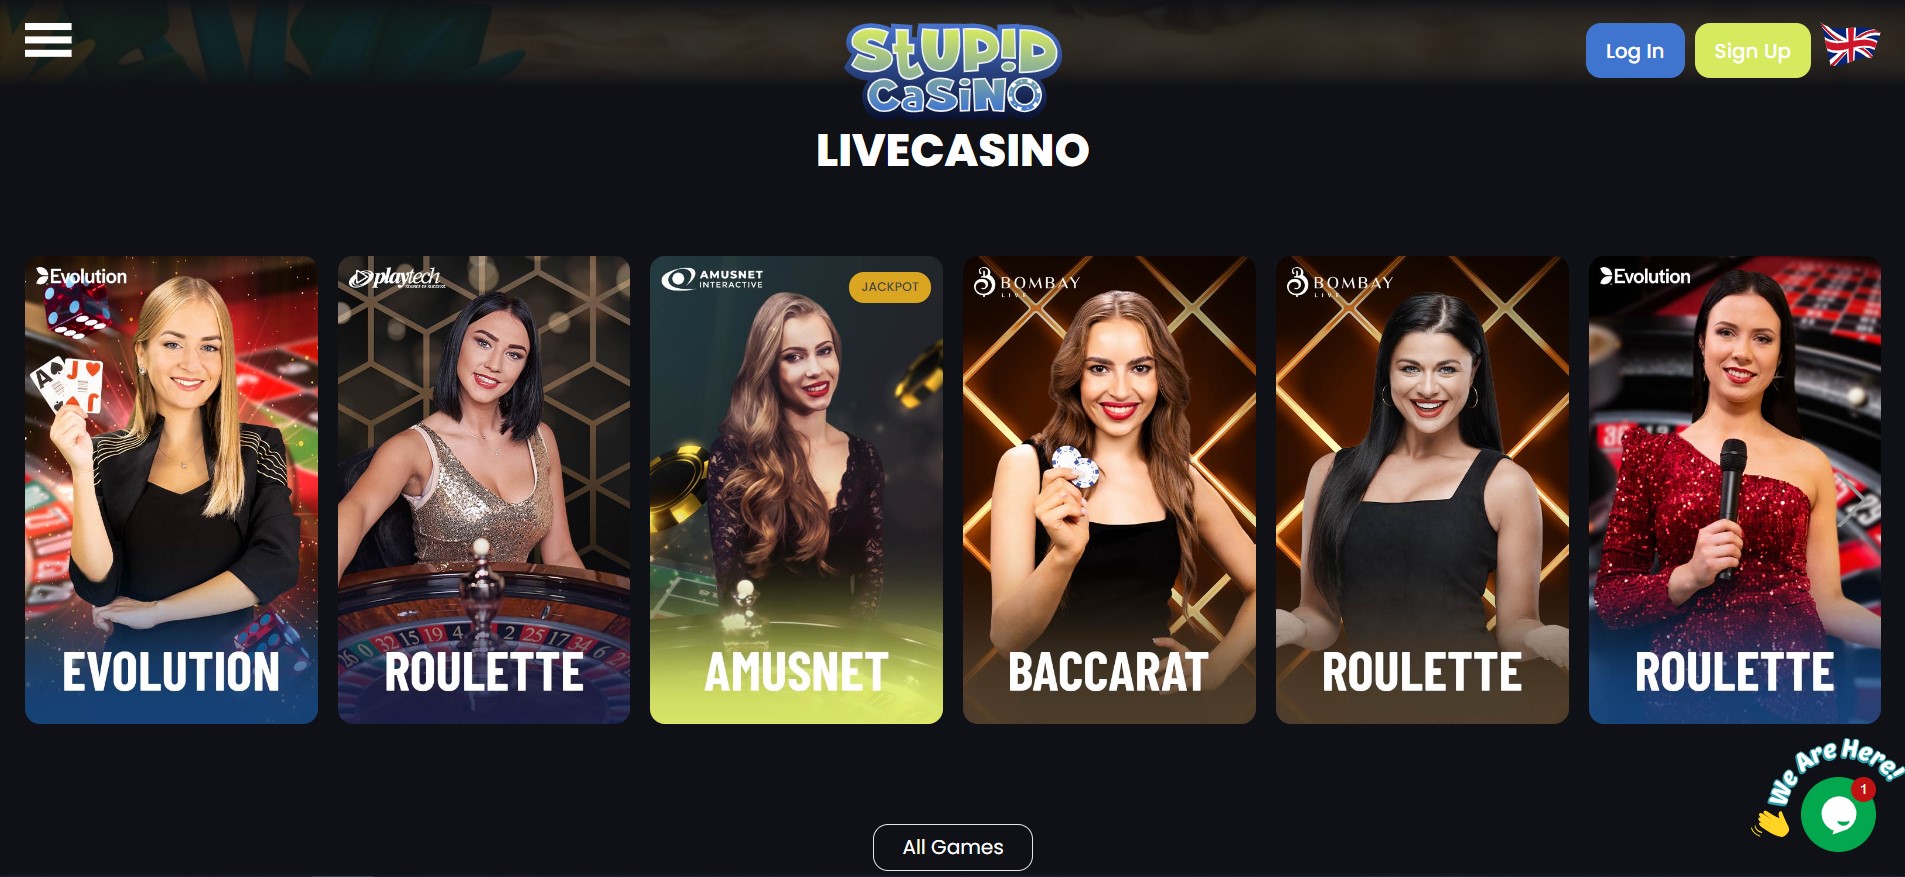 Stupid Casino 4